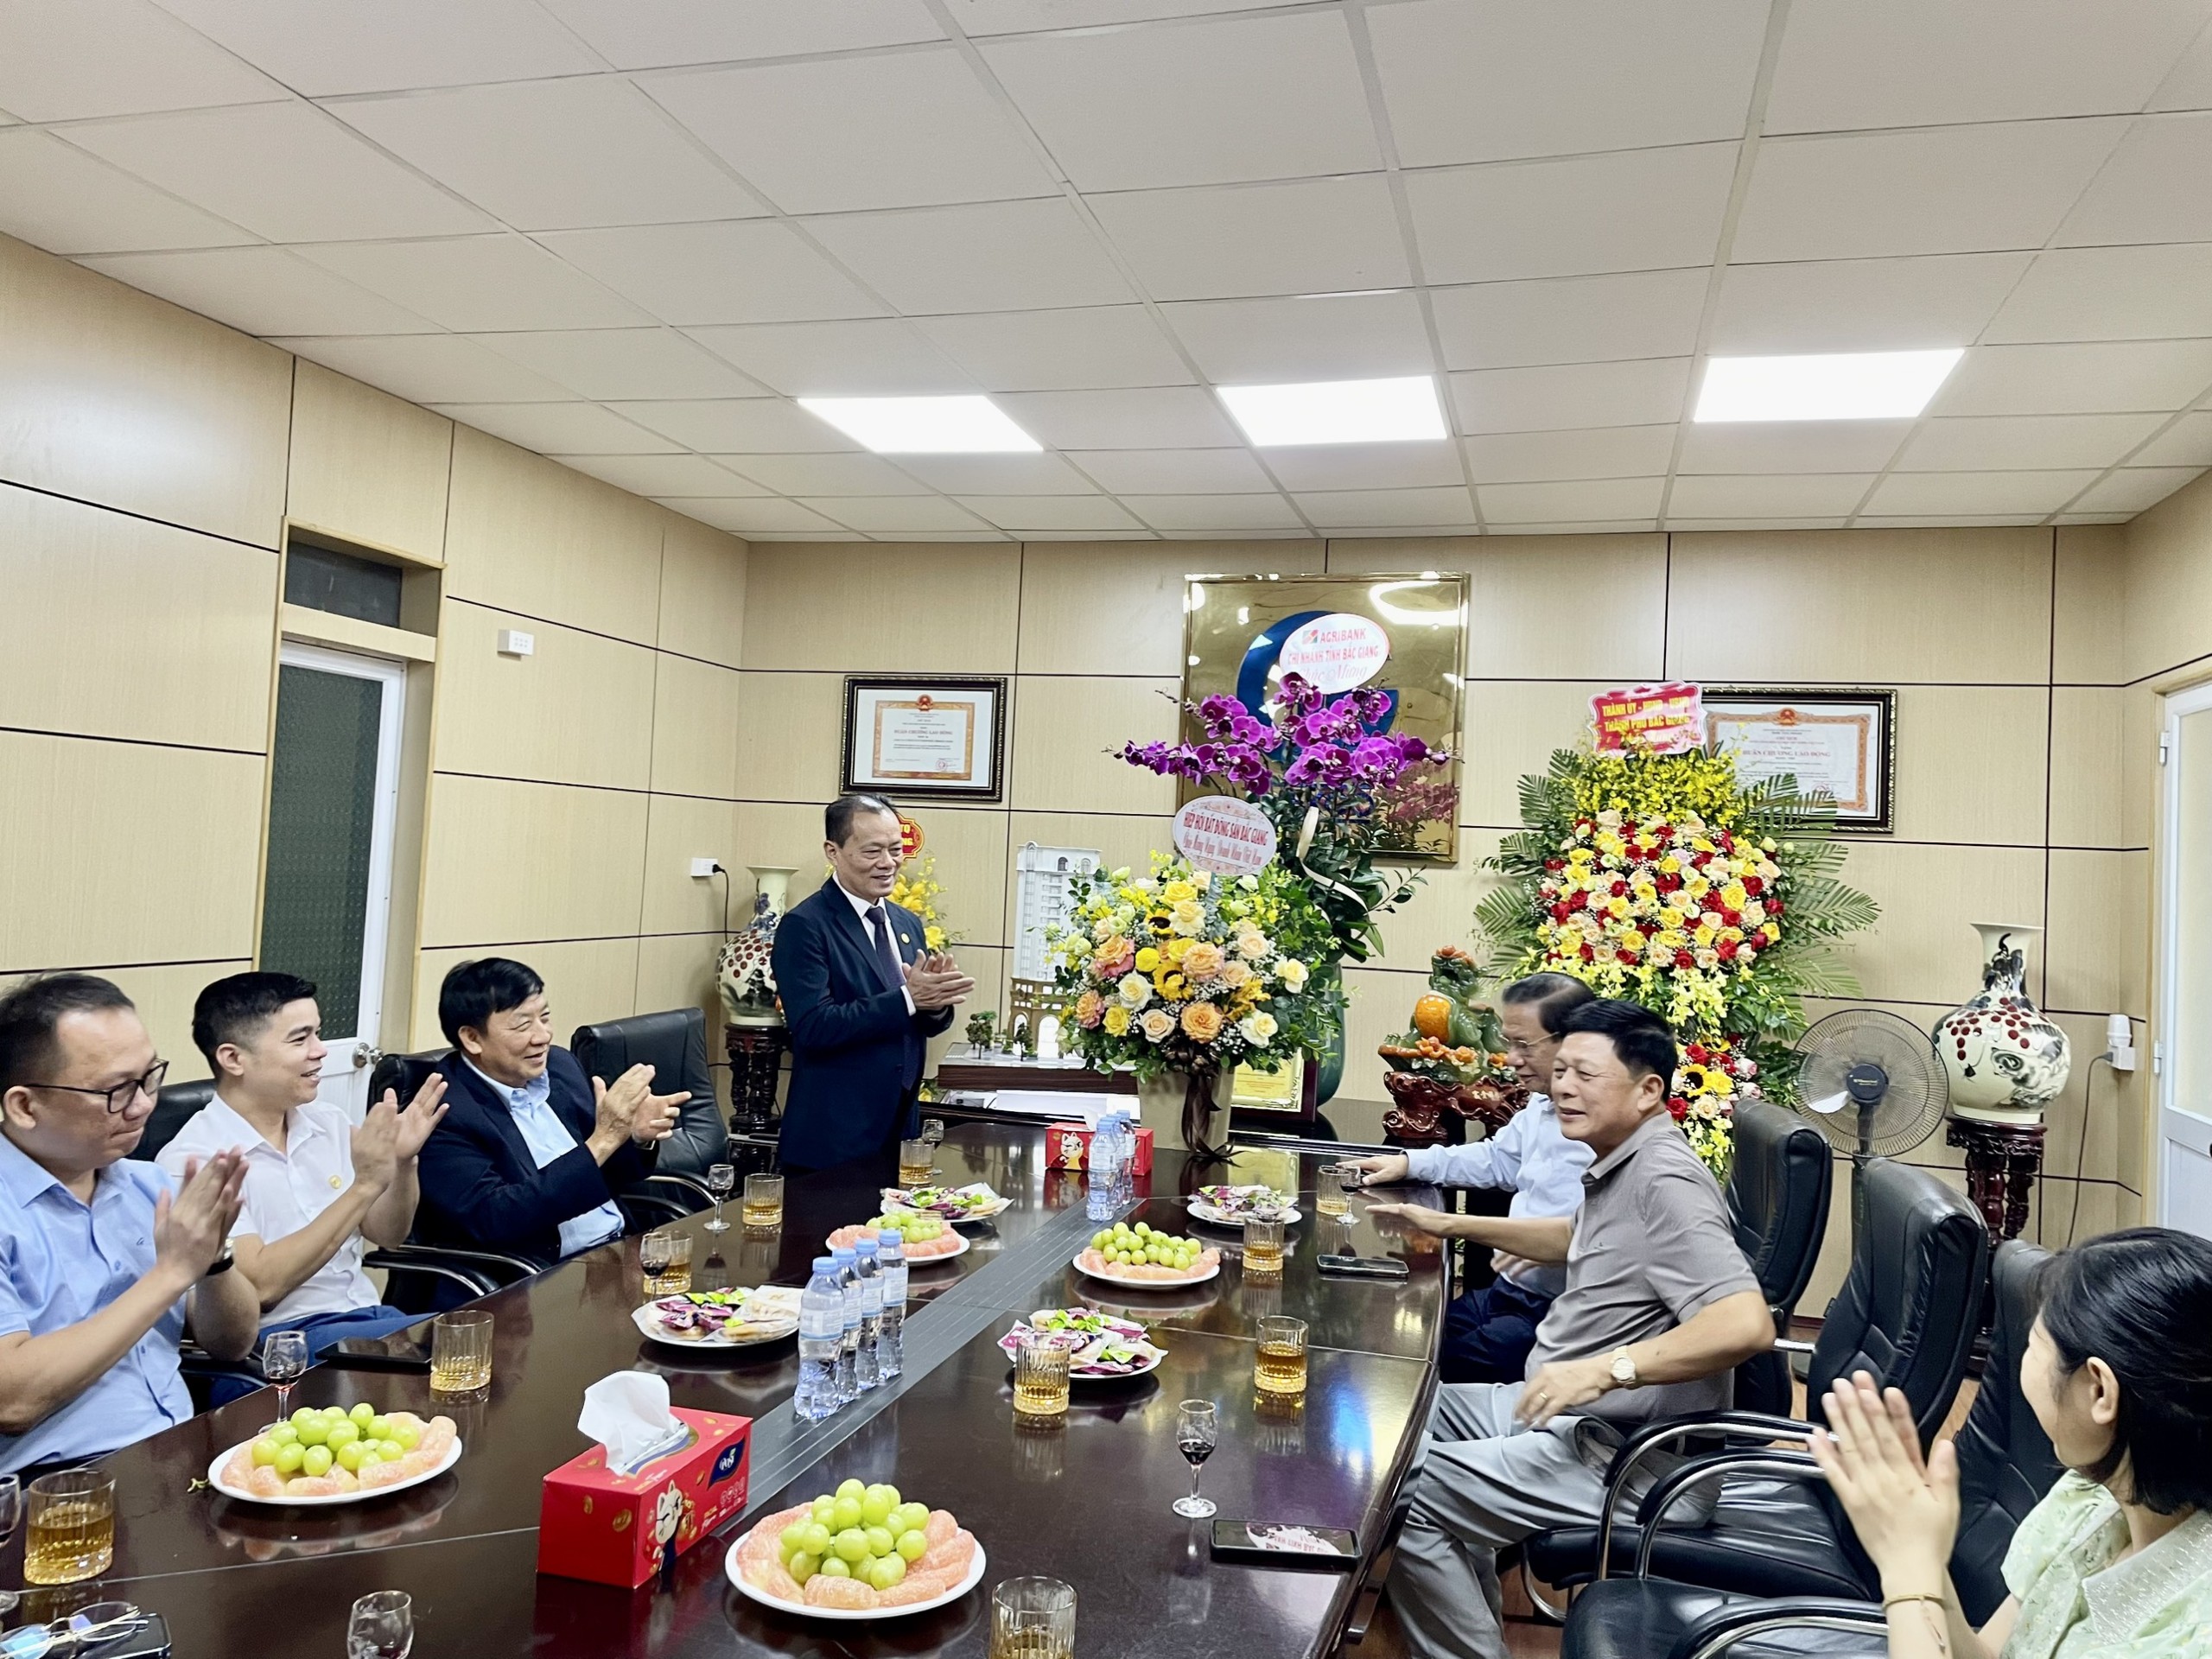 Chúc mừng Hội viên - Công ty cổ phần Xuất nhập khẩu Bắc Giang